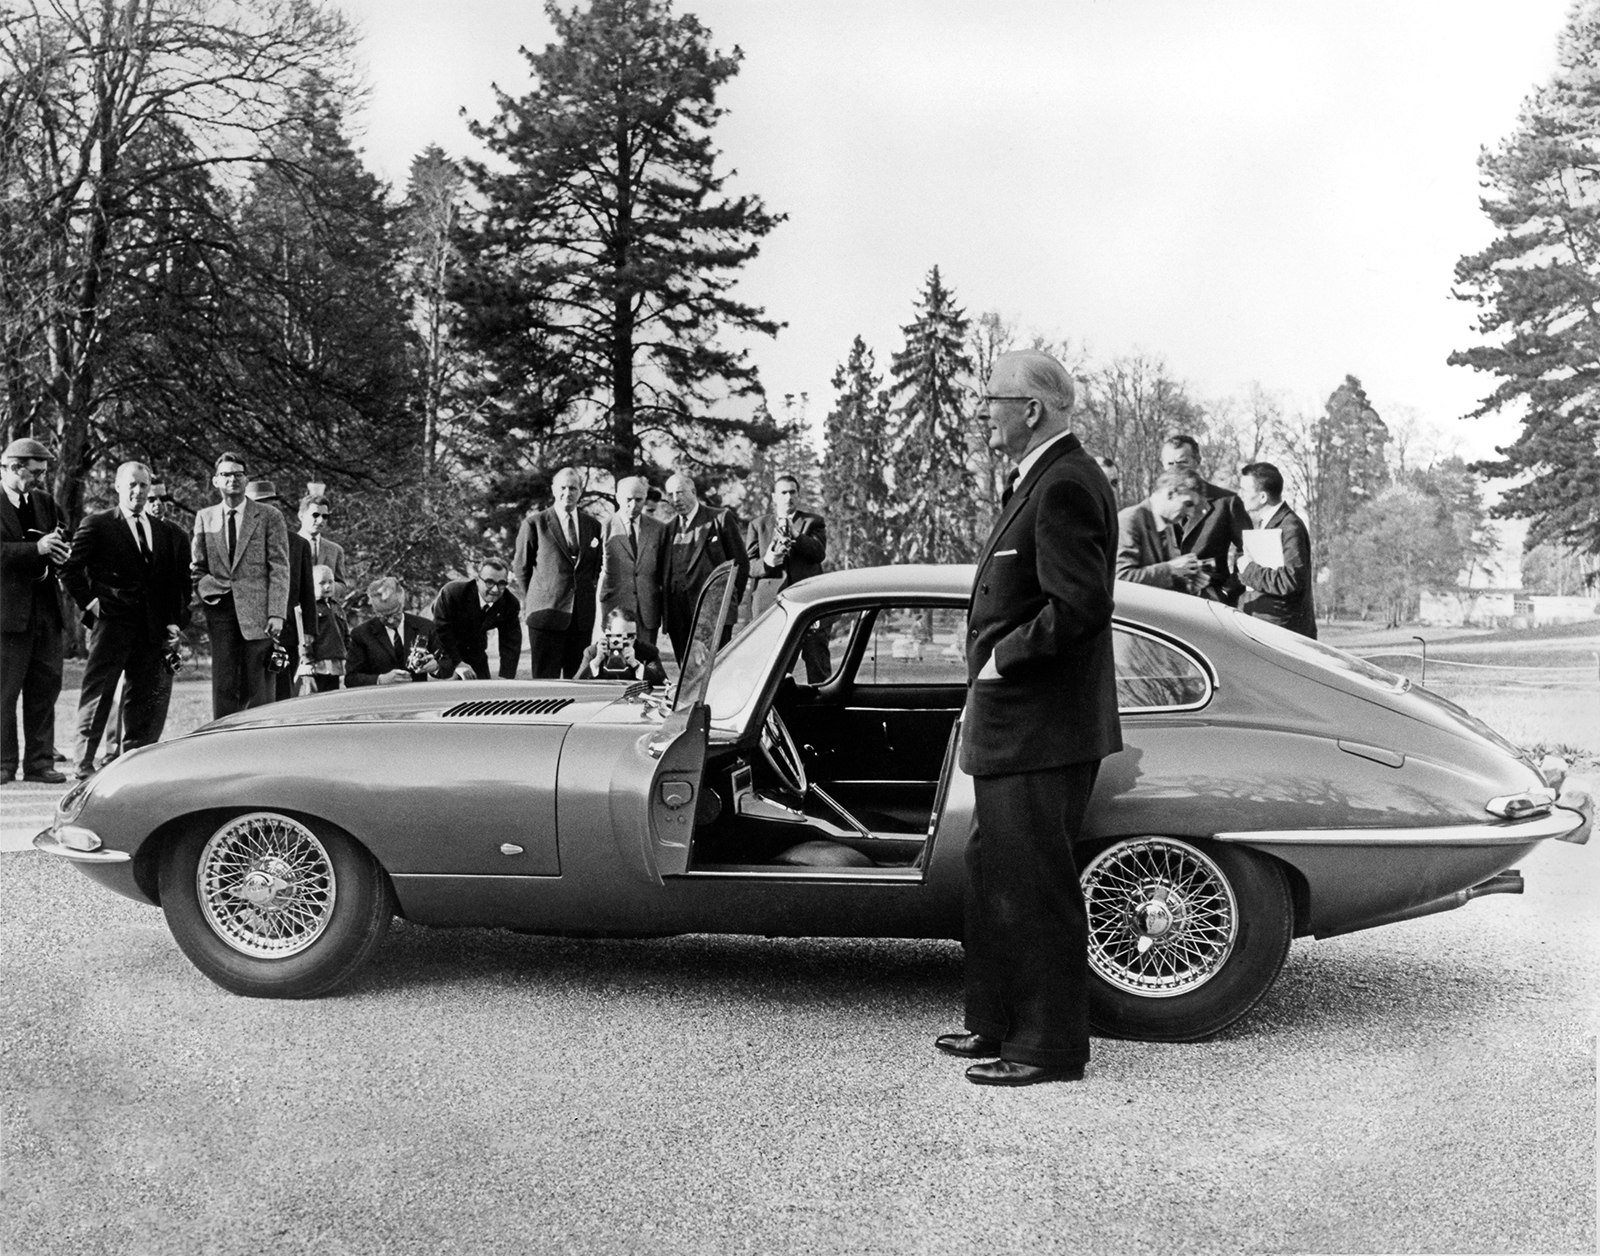  Jaguar świętuje 60. rocznicę powstania E-Type w specjalnej edycji